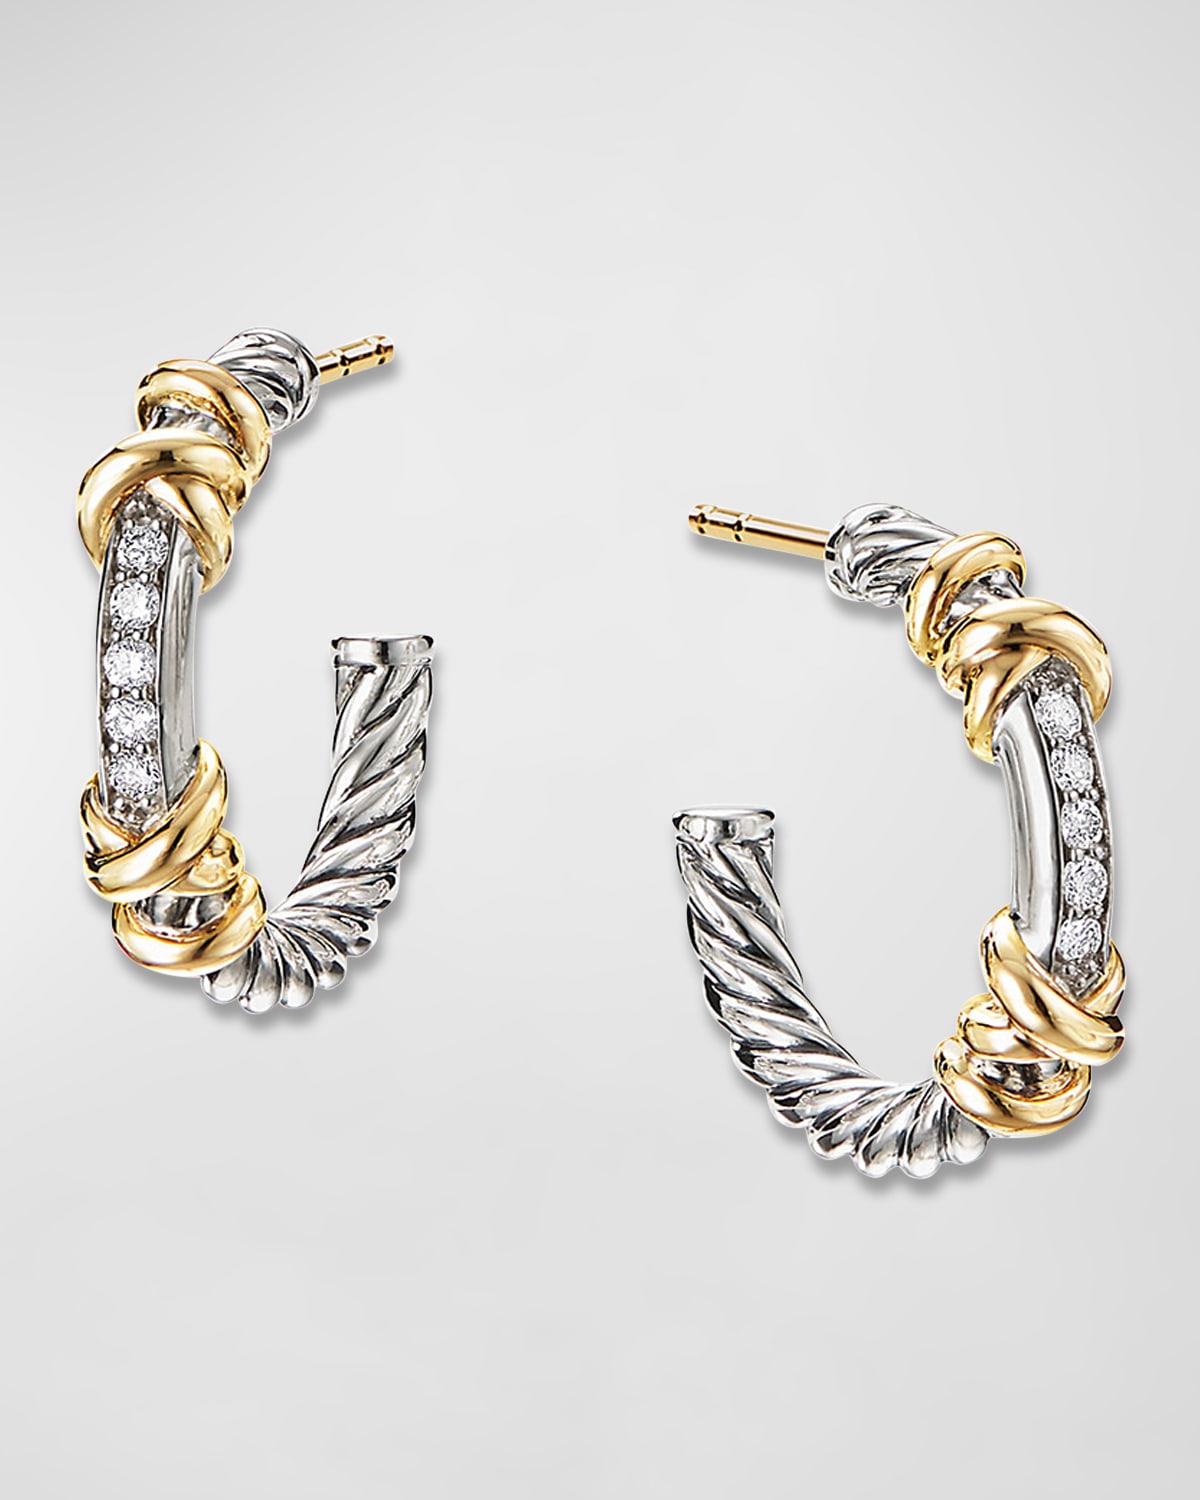 David Yurman Petite Helena Hoop Earrings In Sterling Silver With 18k Gold & Diamonds - 0.75" In Sil18k